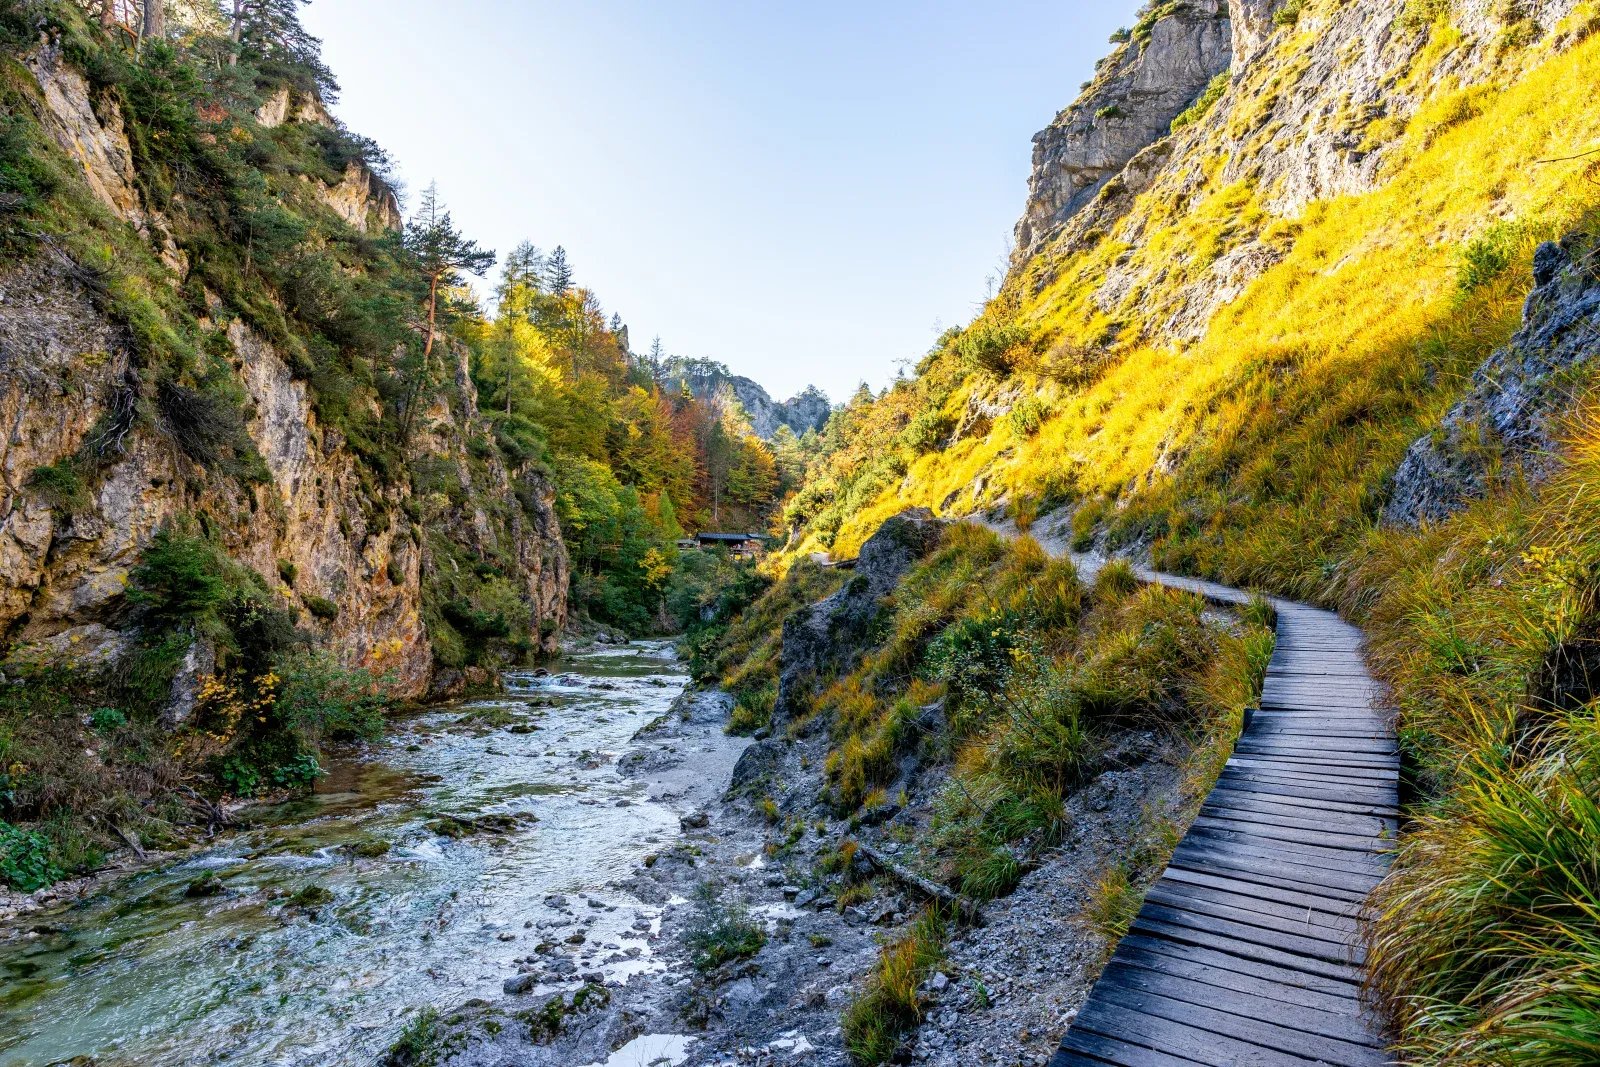 Ötschergräben 2022 - Austria's most popular hiking destination